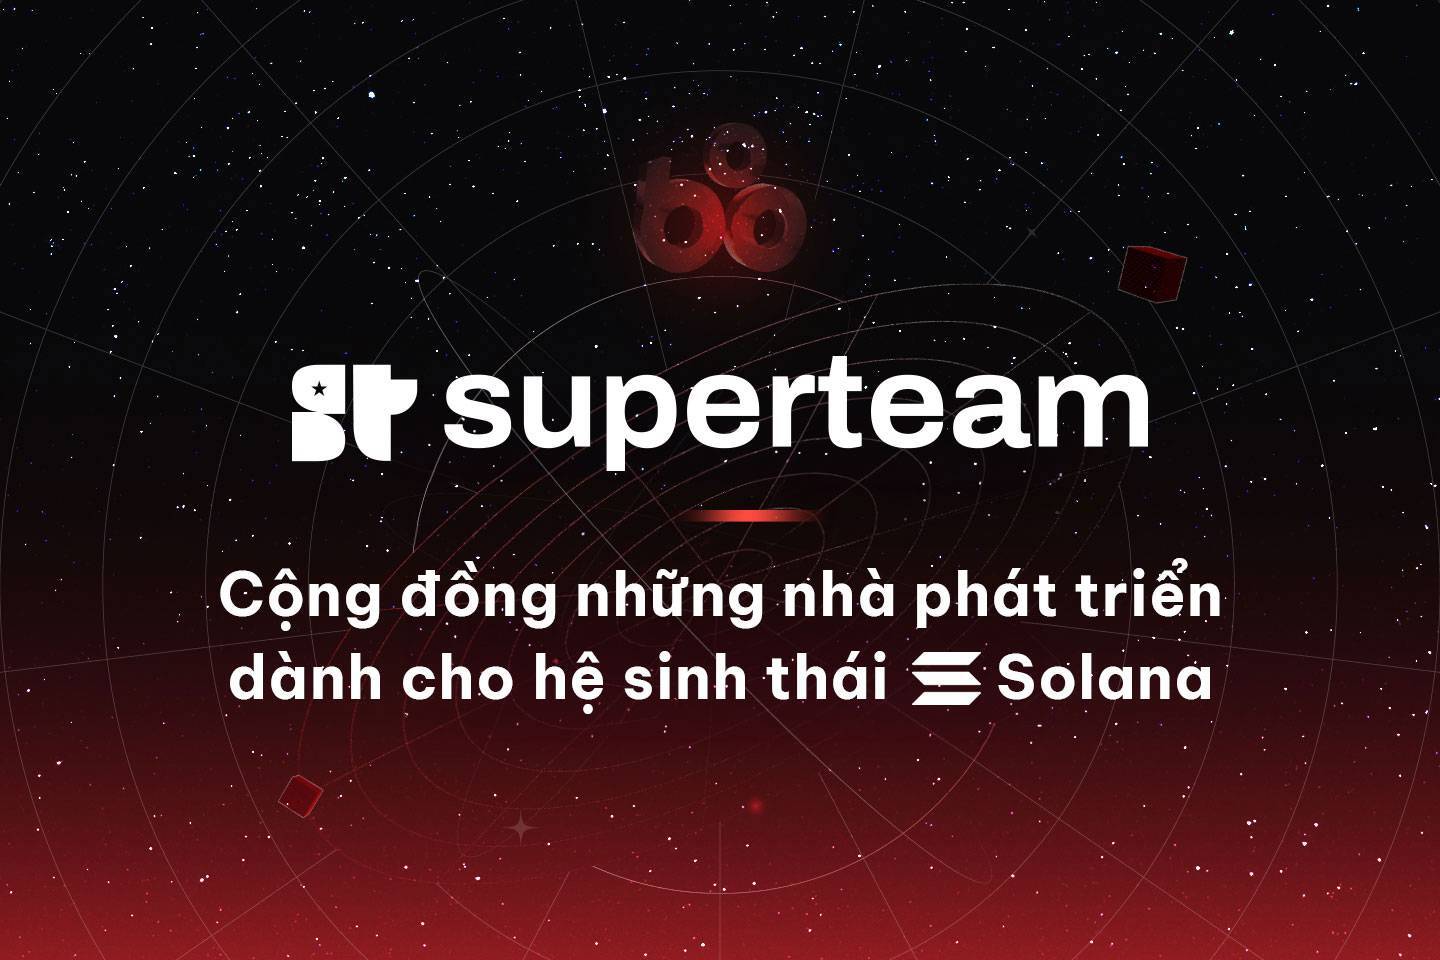 Superteam - Cộng Đồng Những Nhà Phát Triển Dành Cho Hệ Sinh Thái Solana